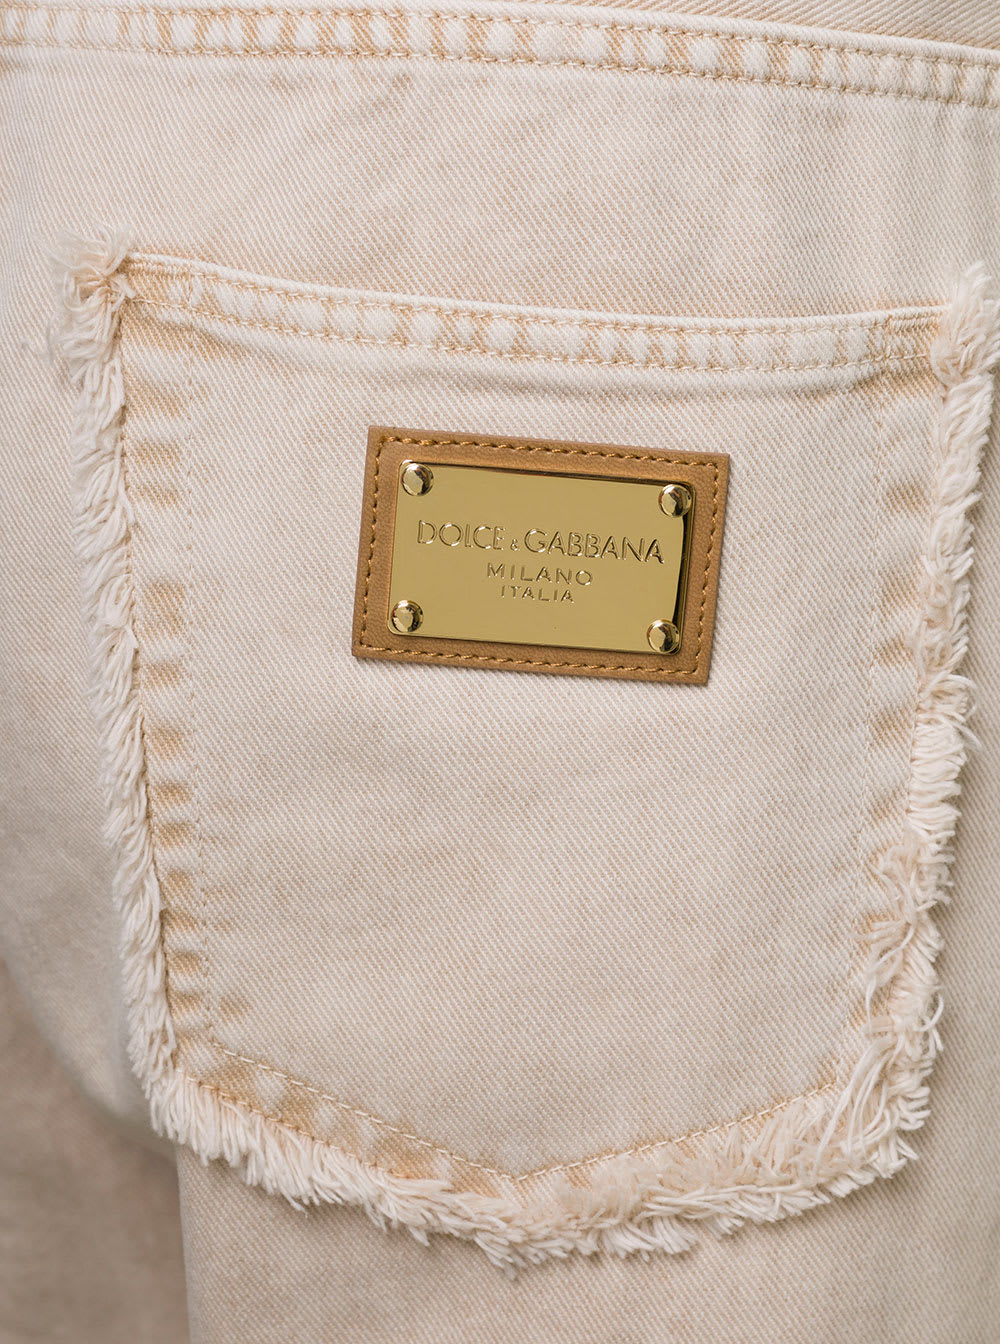 Shop Dolce & Gabbana Cream Whie Wide-leg Jeans With Logo Plaque In Cotton Denim Man In Beige